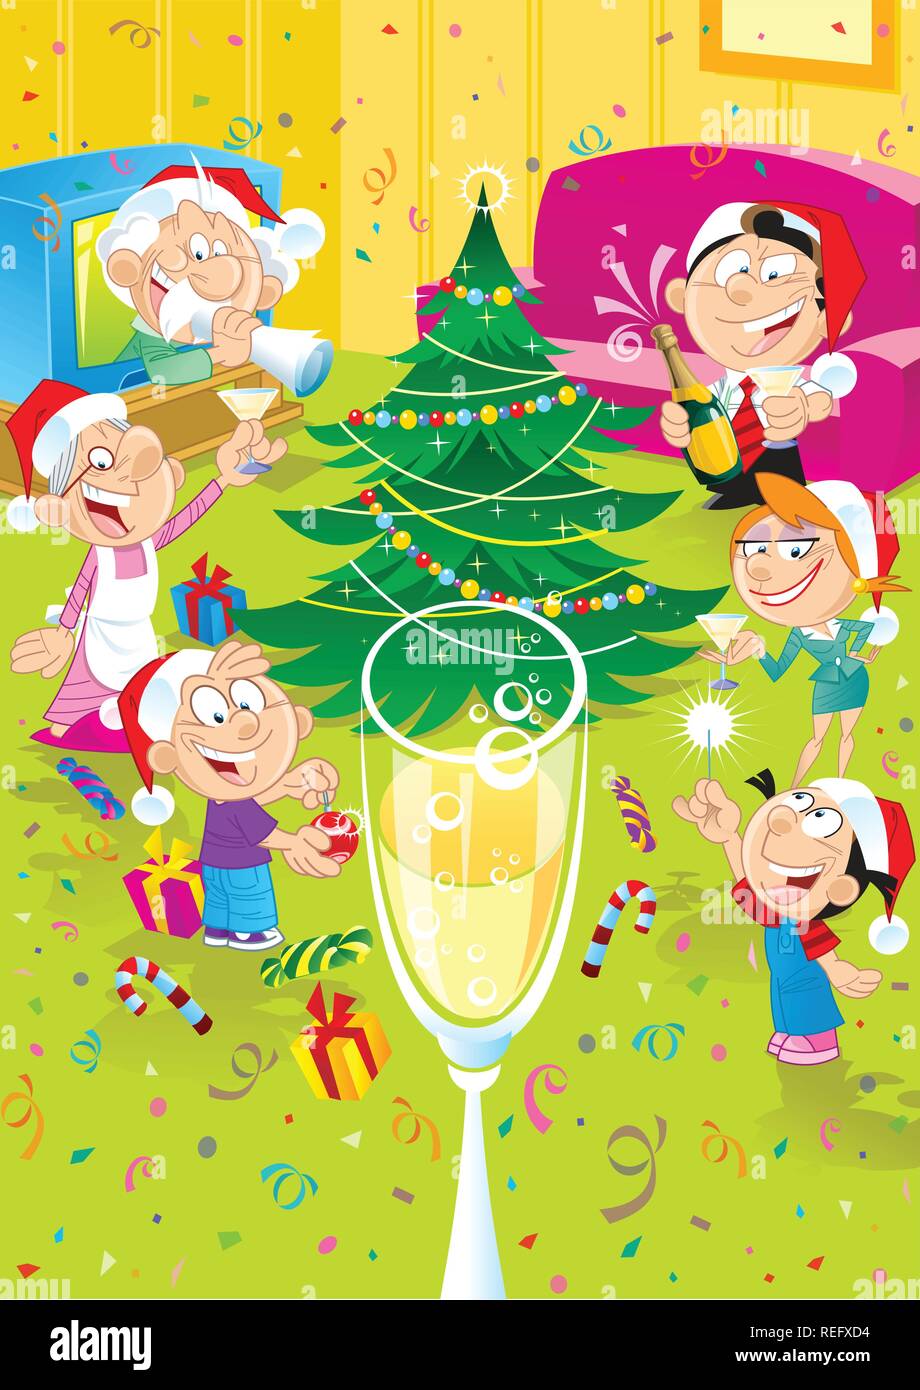 L'illustration montre comment une famille de six personnes célèbrent Noël. Ils se saluent dans une chambre près de l'arbre de Noël. Illustration de Vecteur